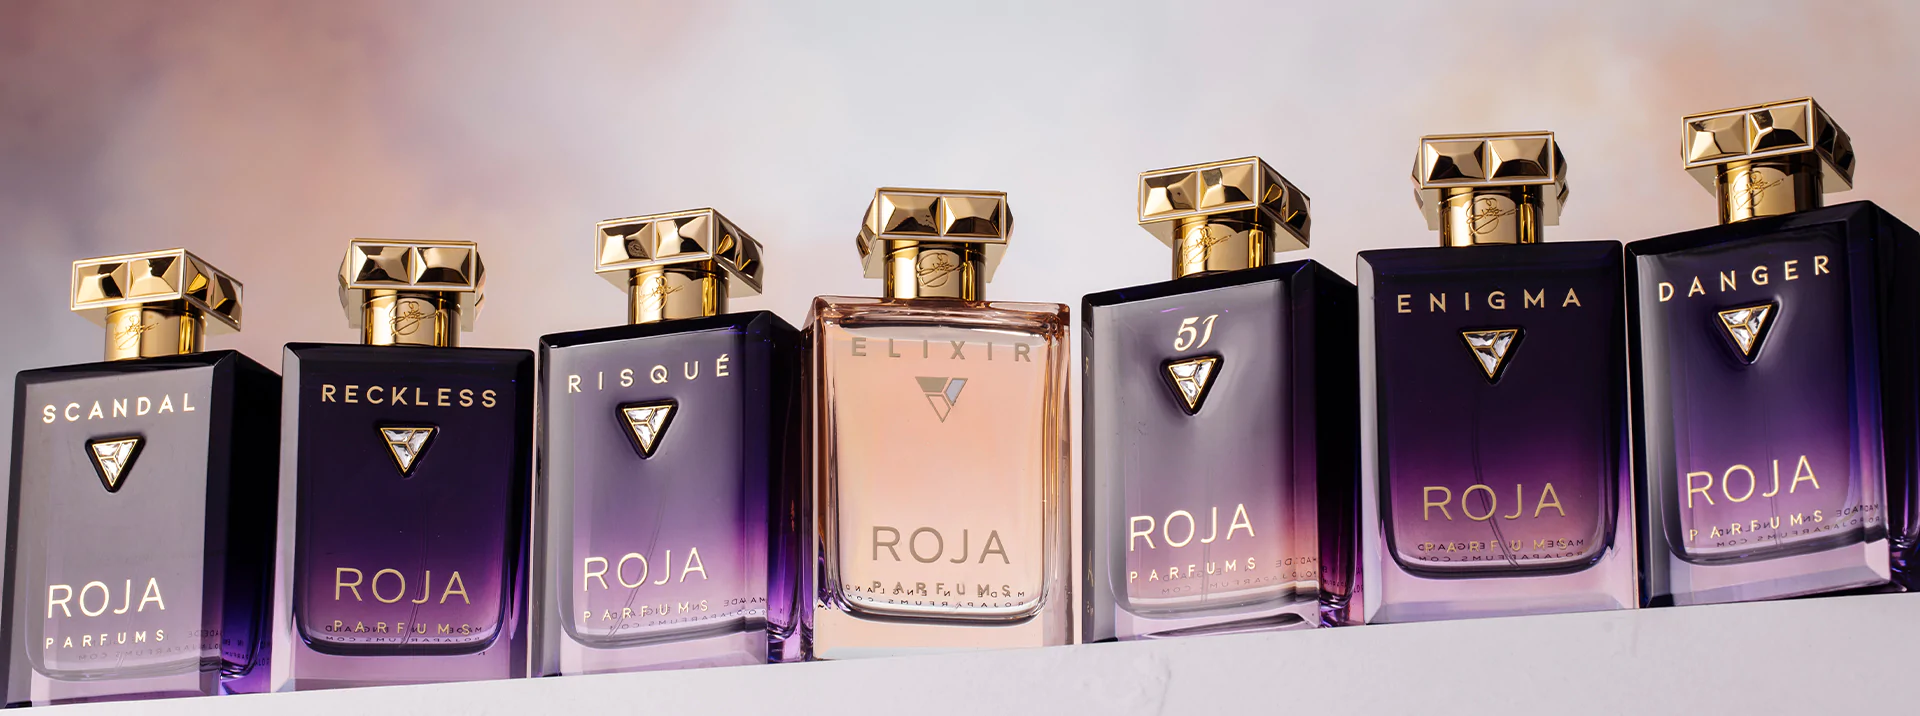 Reckless Essence De Parfum - ROJA